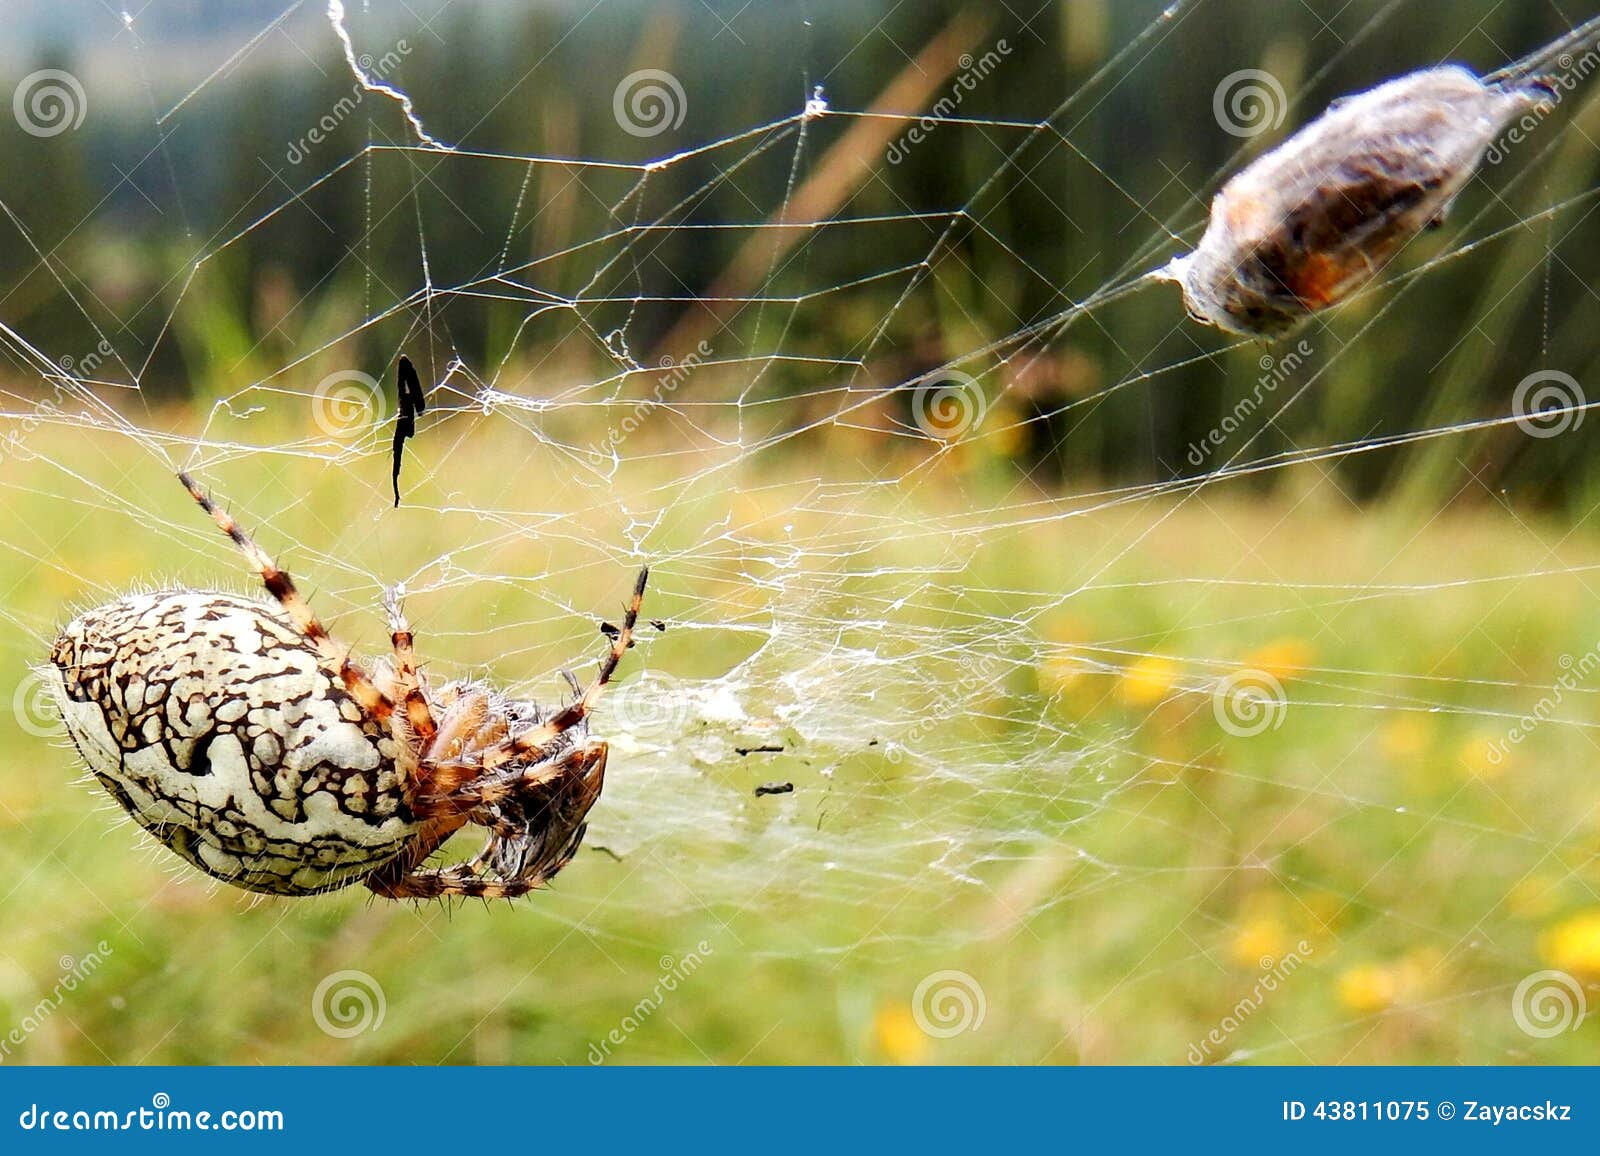 European Garden Spider Araneus Diadematus With Fly Bound In